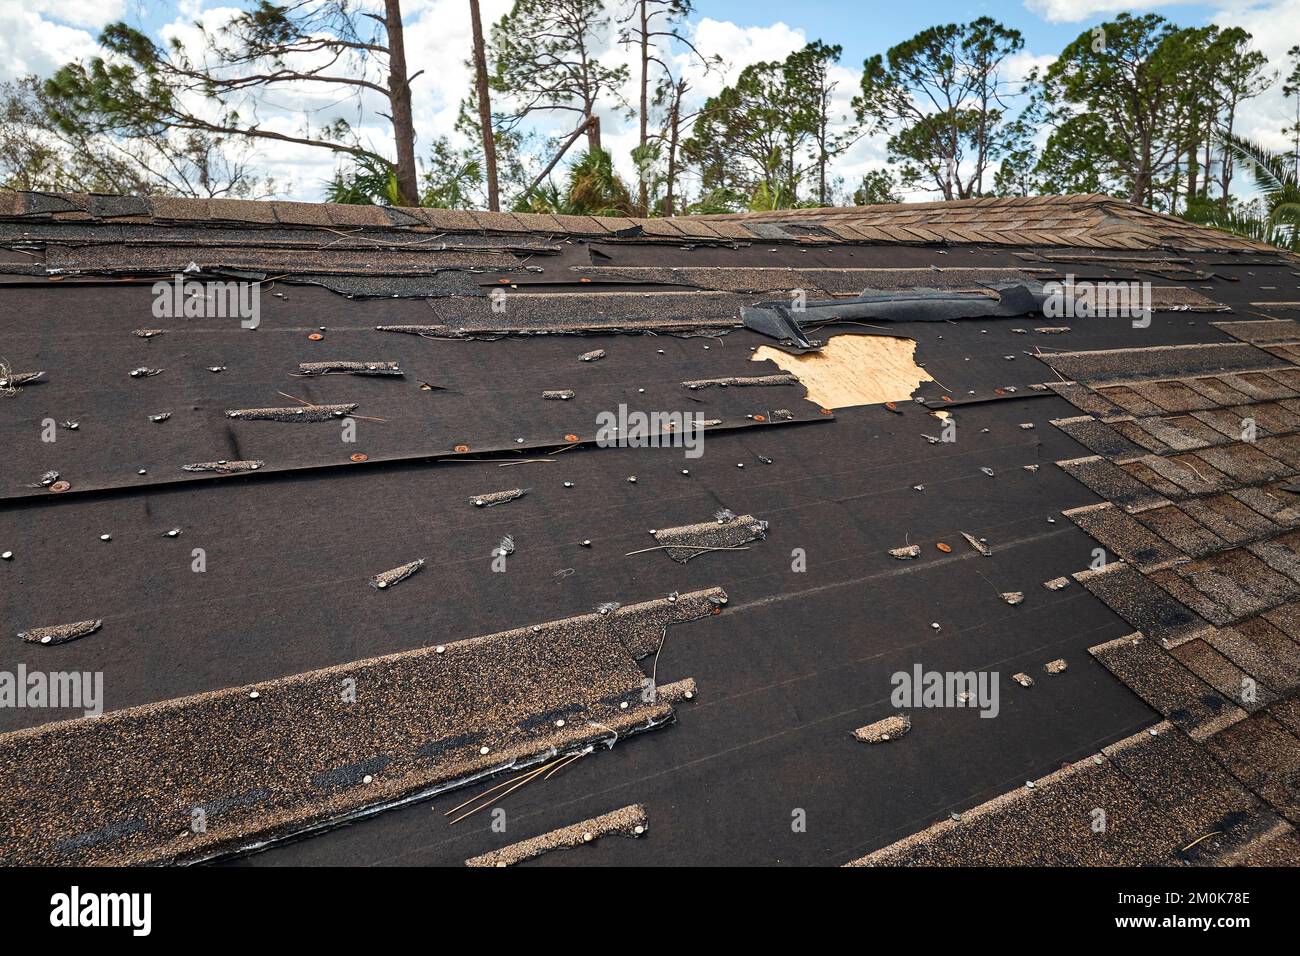 Vento danneggiato tetto casa con scandole di asfalto mancanti dopo l'uragano Ian in Florida. Riparazione del concetto di casa sul tetto Foto Stock